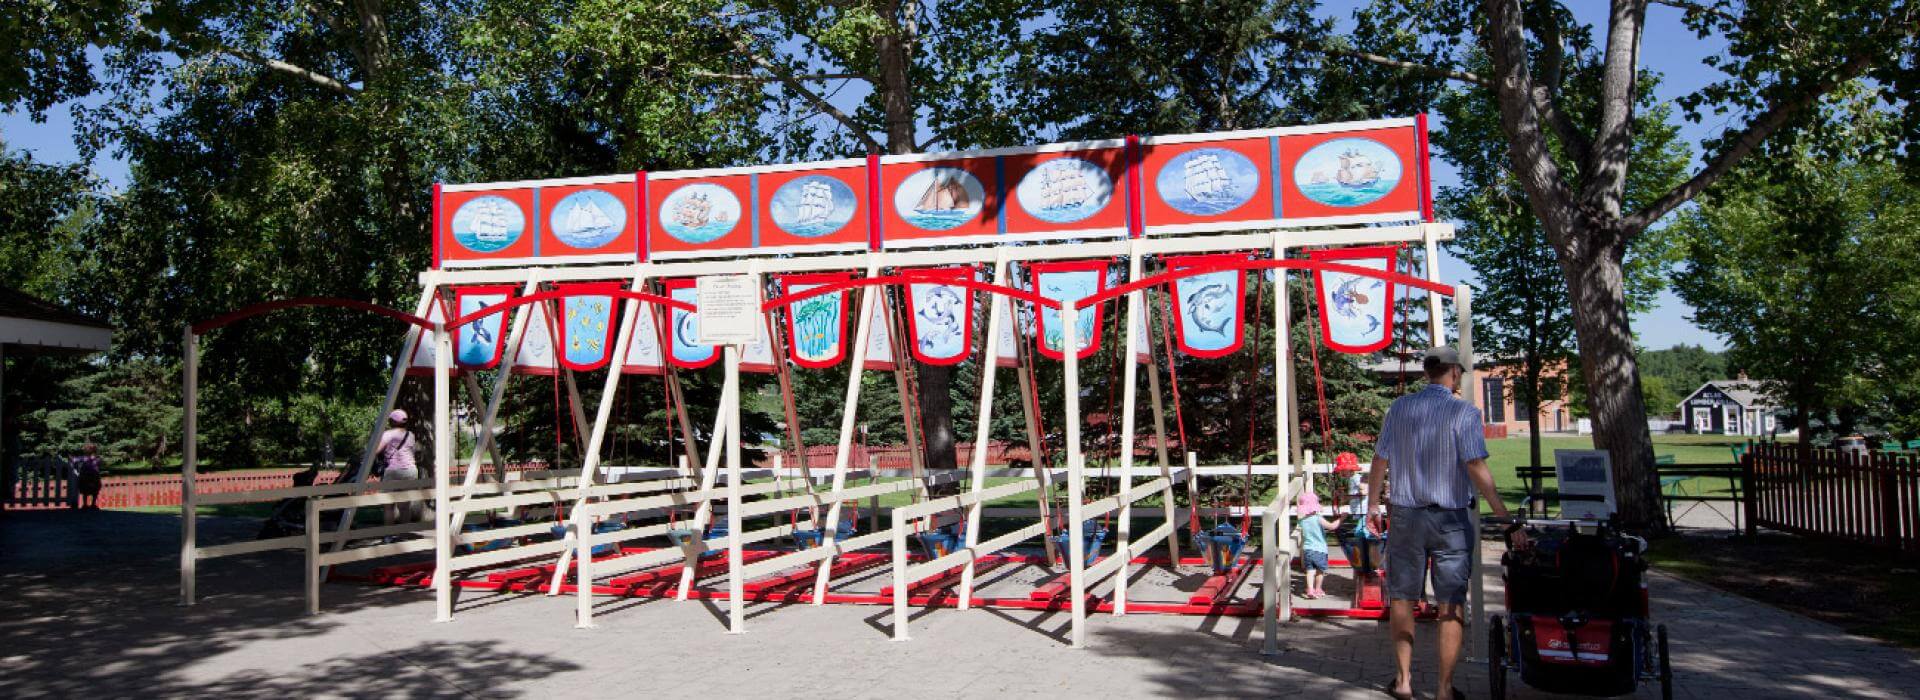 8 swings side by side in the amusement park 